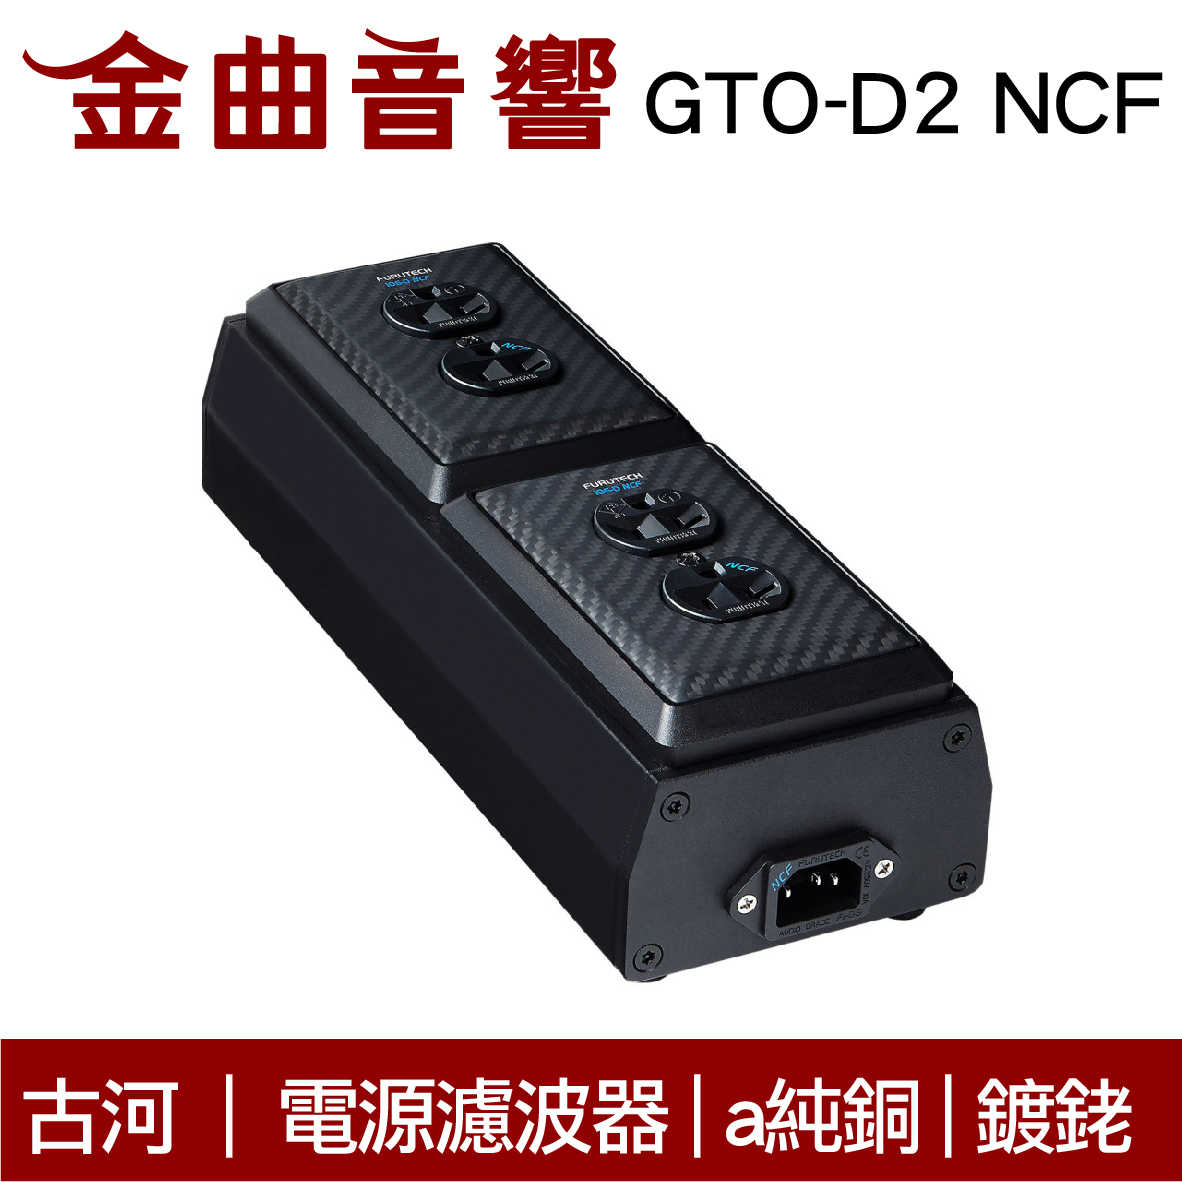 Furutech 古河 GTO-D2 NCF GTO-D3 NCF 電源 濾波器 鍍銠 排插 分配器 | 金曲音響